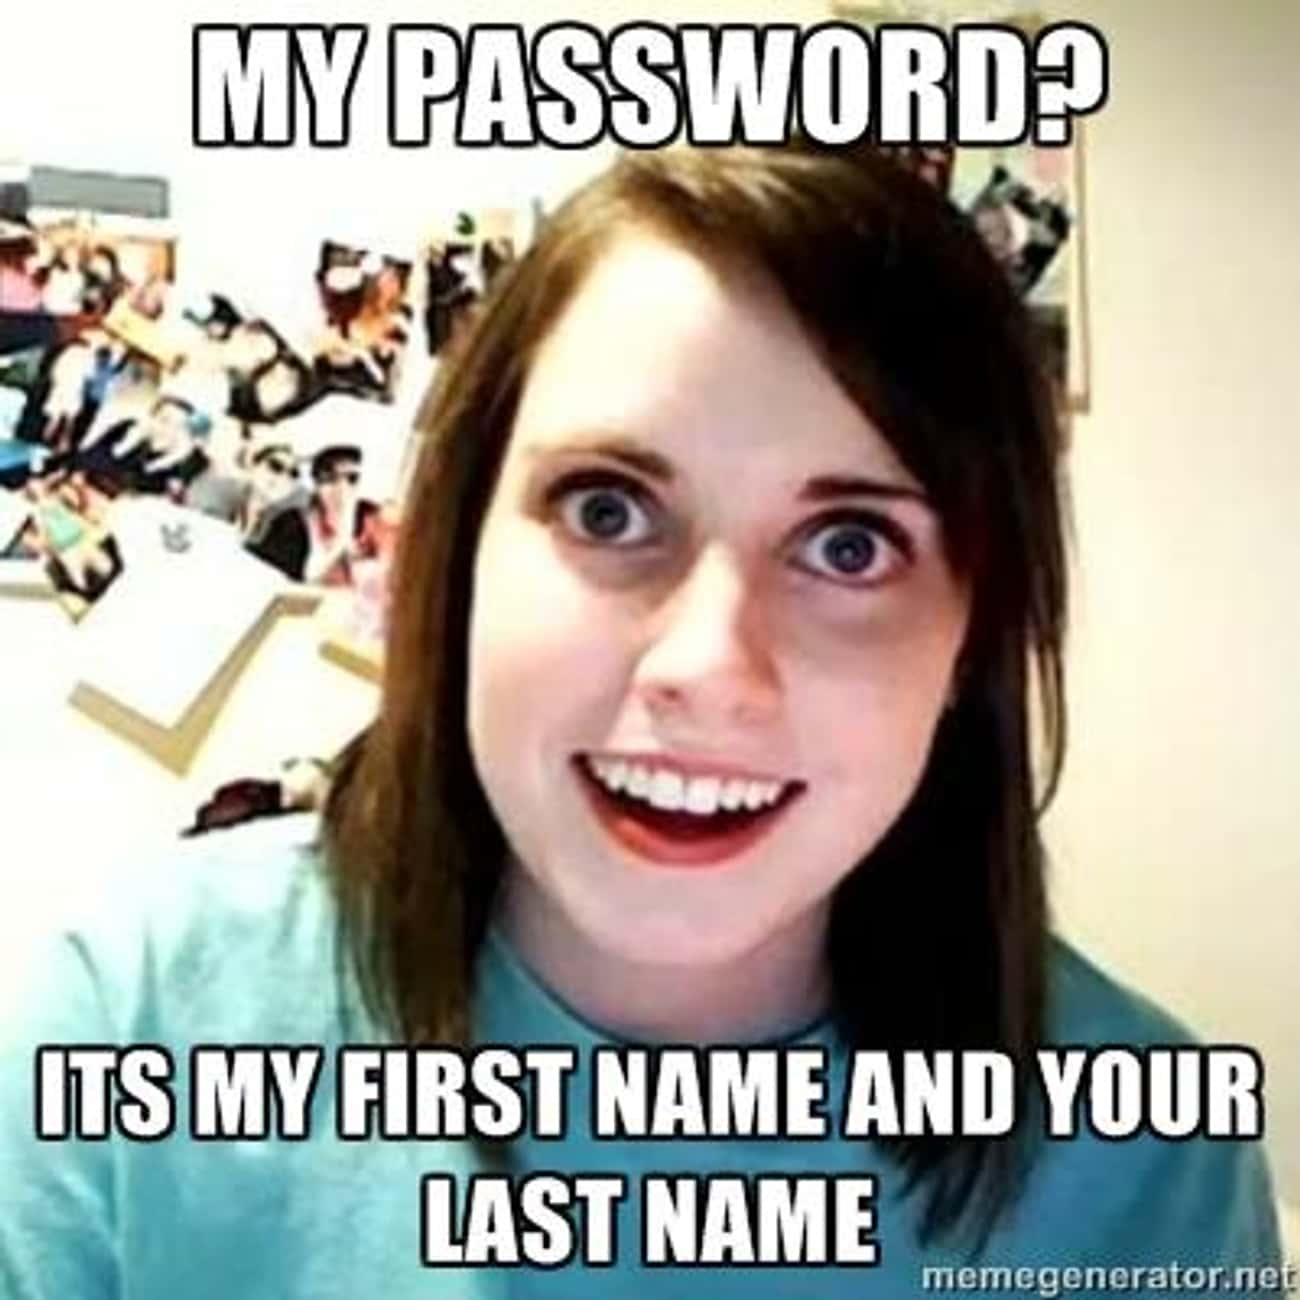 On Passwords